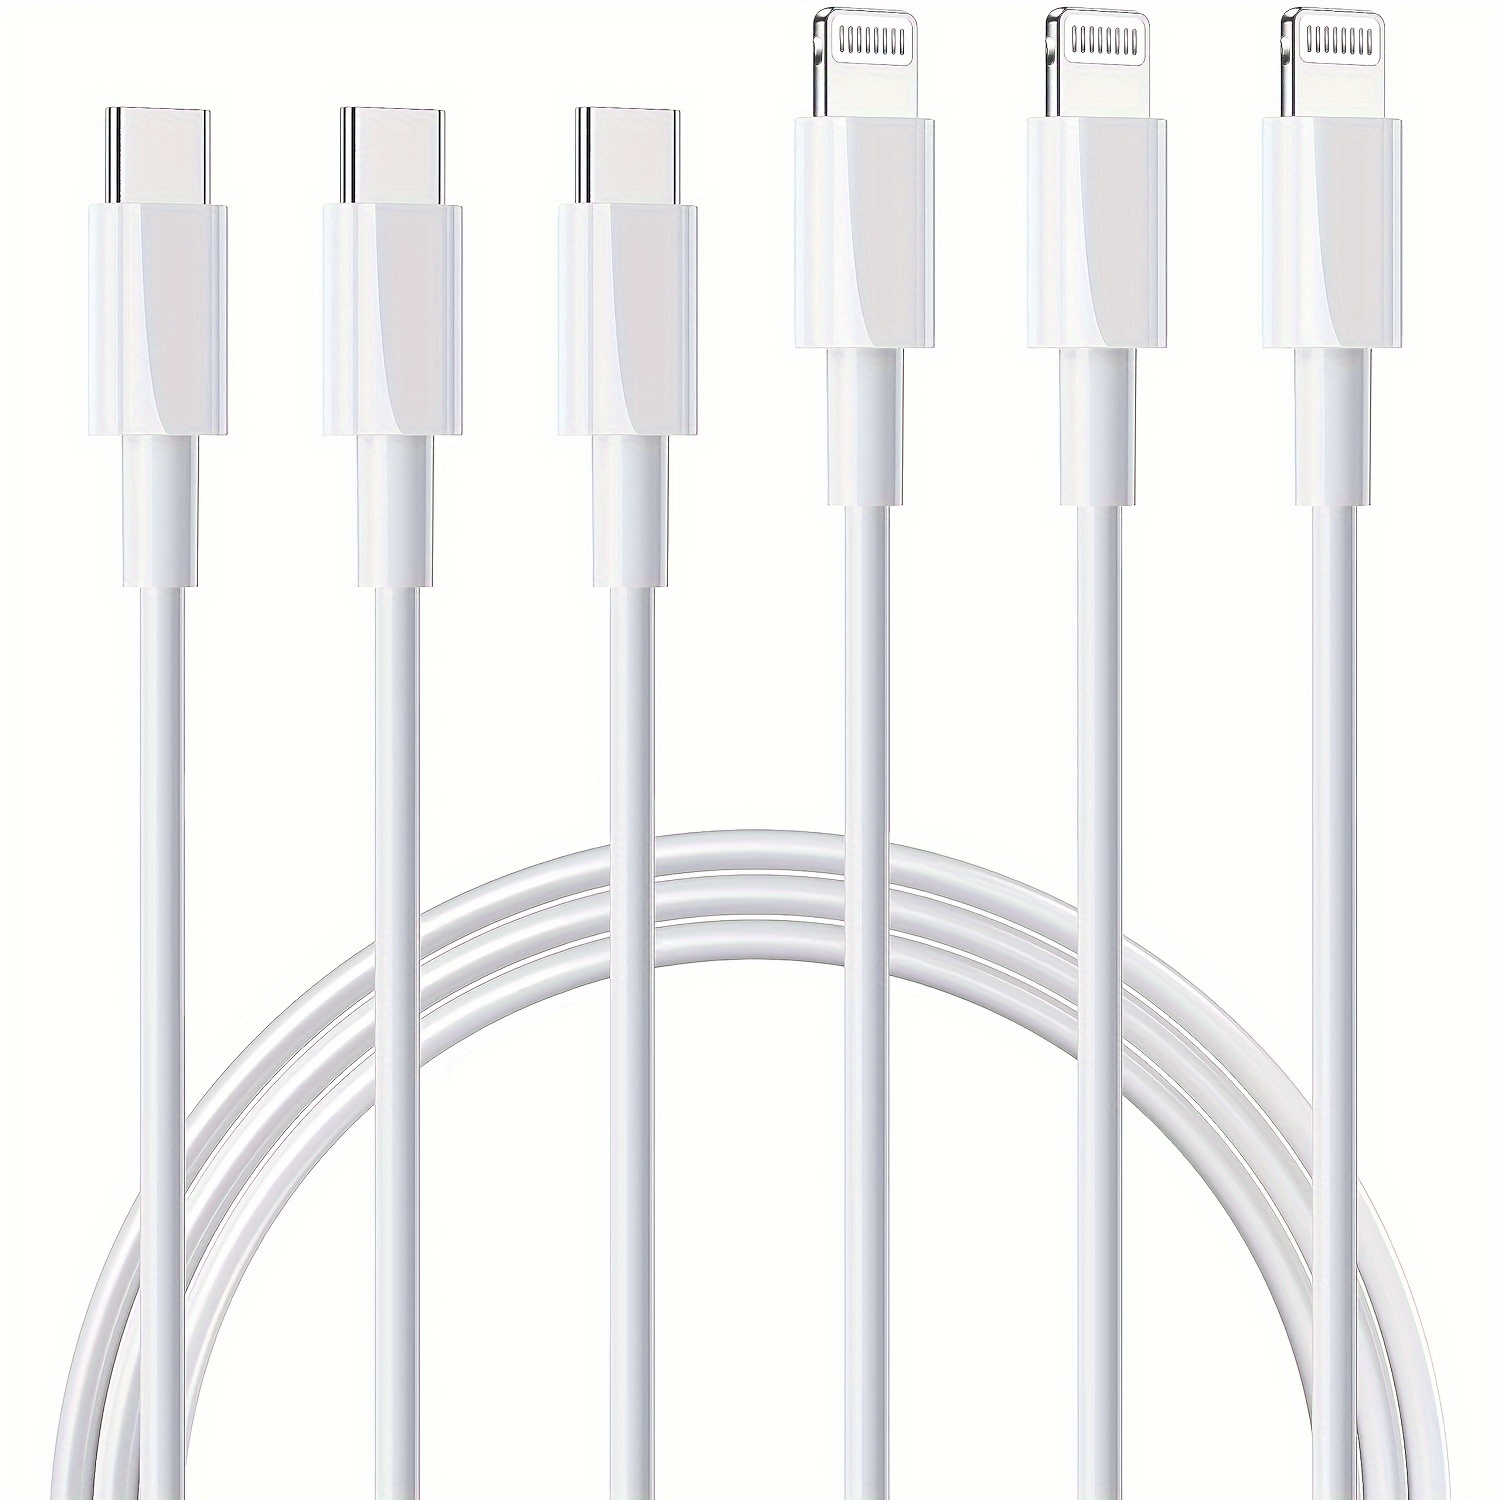 Cargador rápido para iPhone – Cable USB-C a Lightning de 6 pies con  certificación MFi PD3.0 de 20 W tipo C, bloque de carga rápida súper  rápida